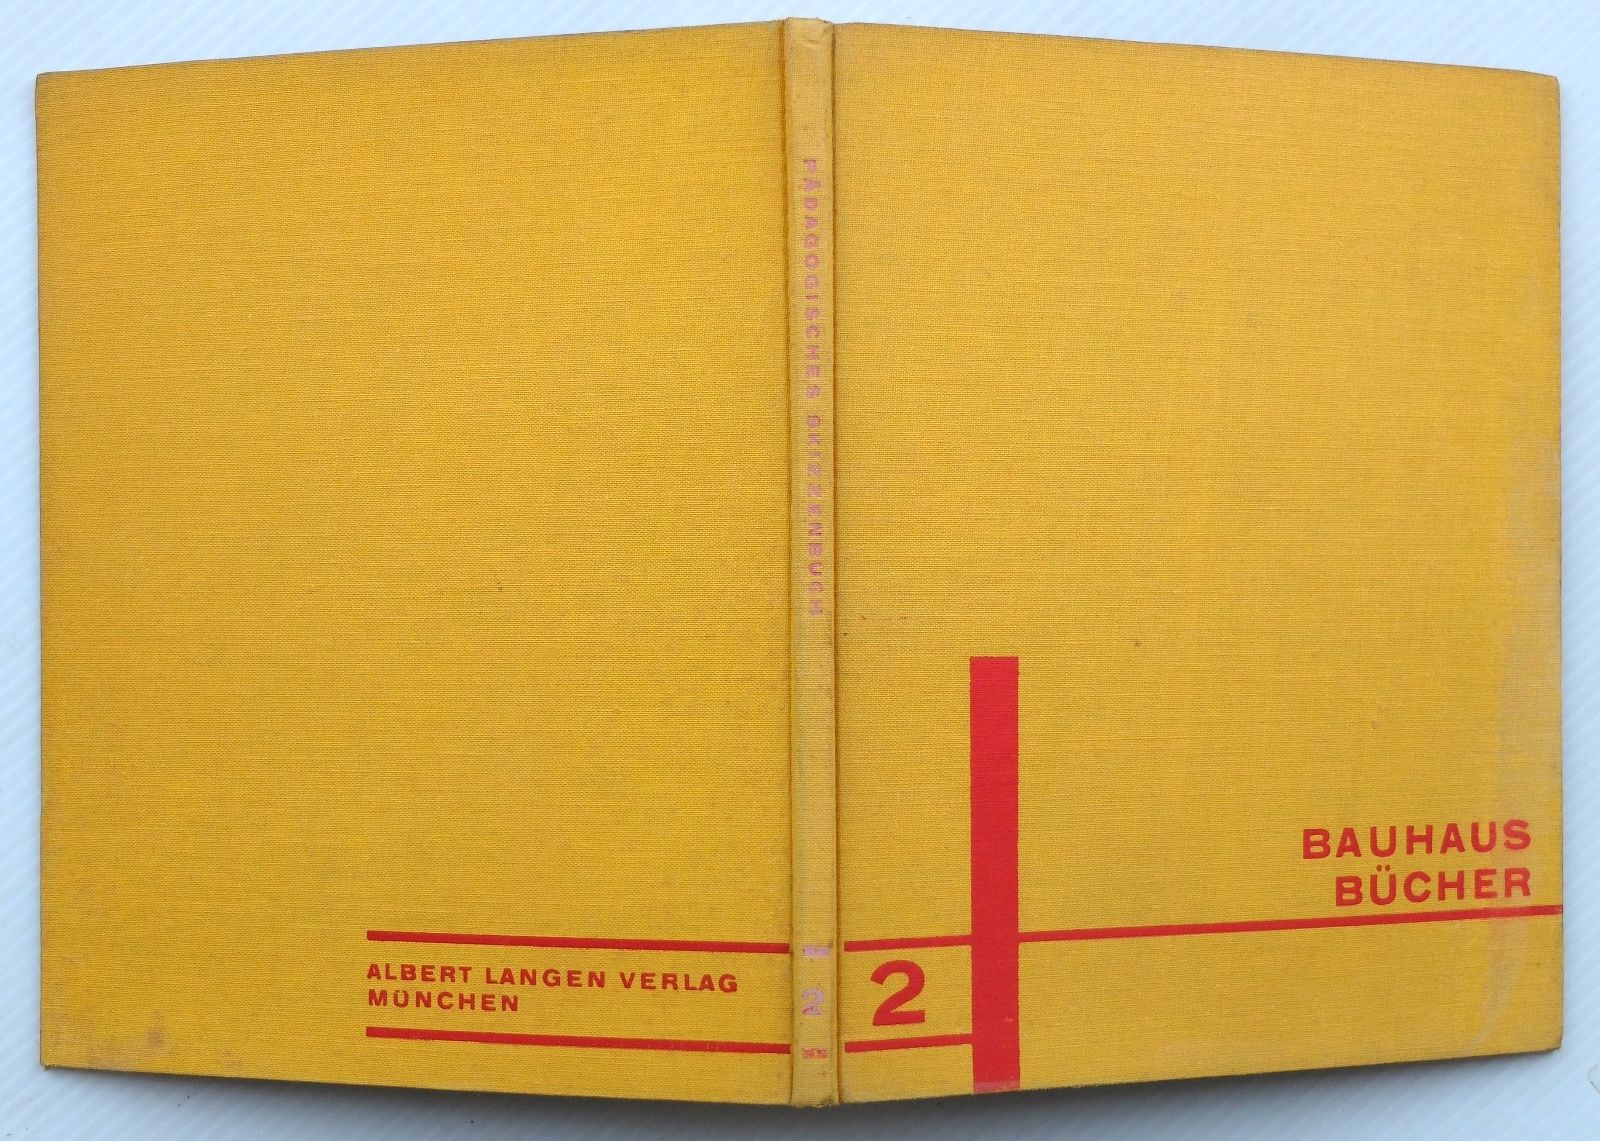 Bauhausbücher 2. Paul Klee. Skizzenbuch. Langen, 1925. Erstausgabe. Bauhaus.